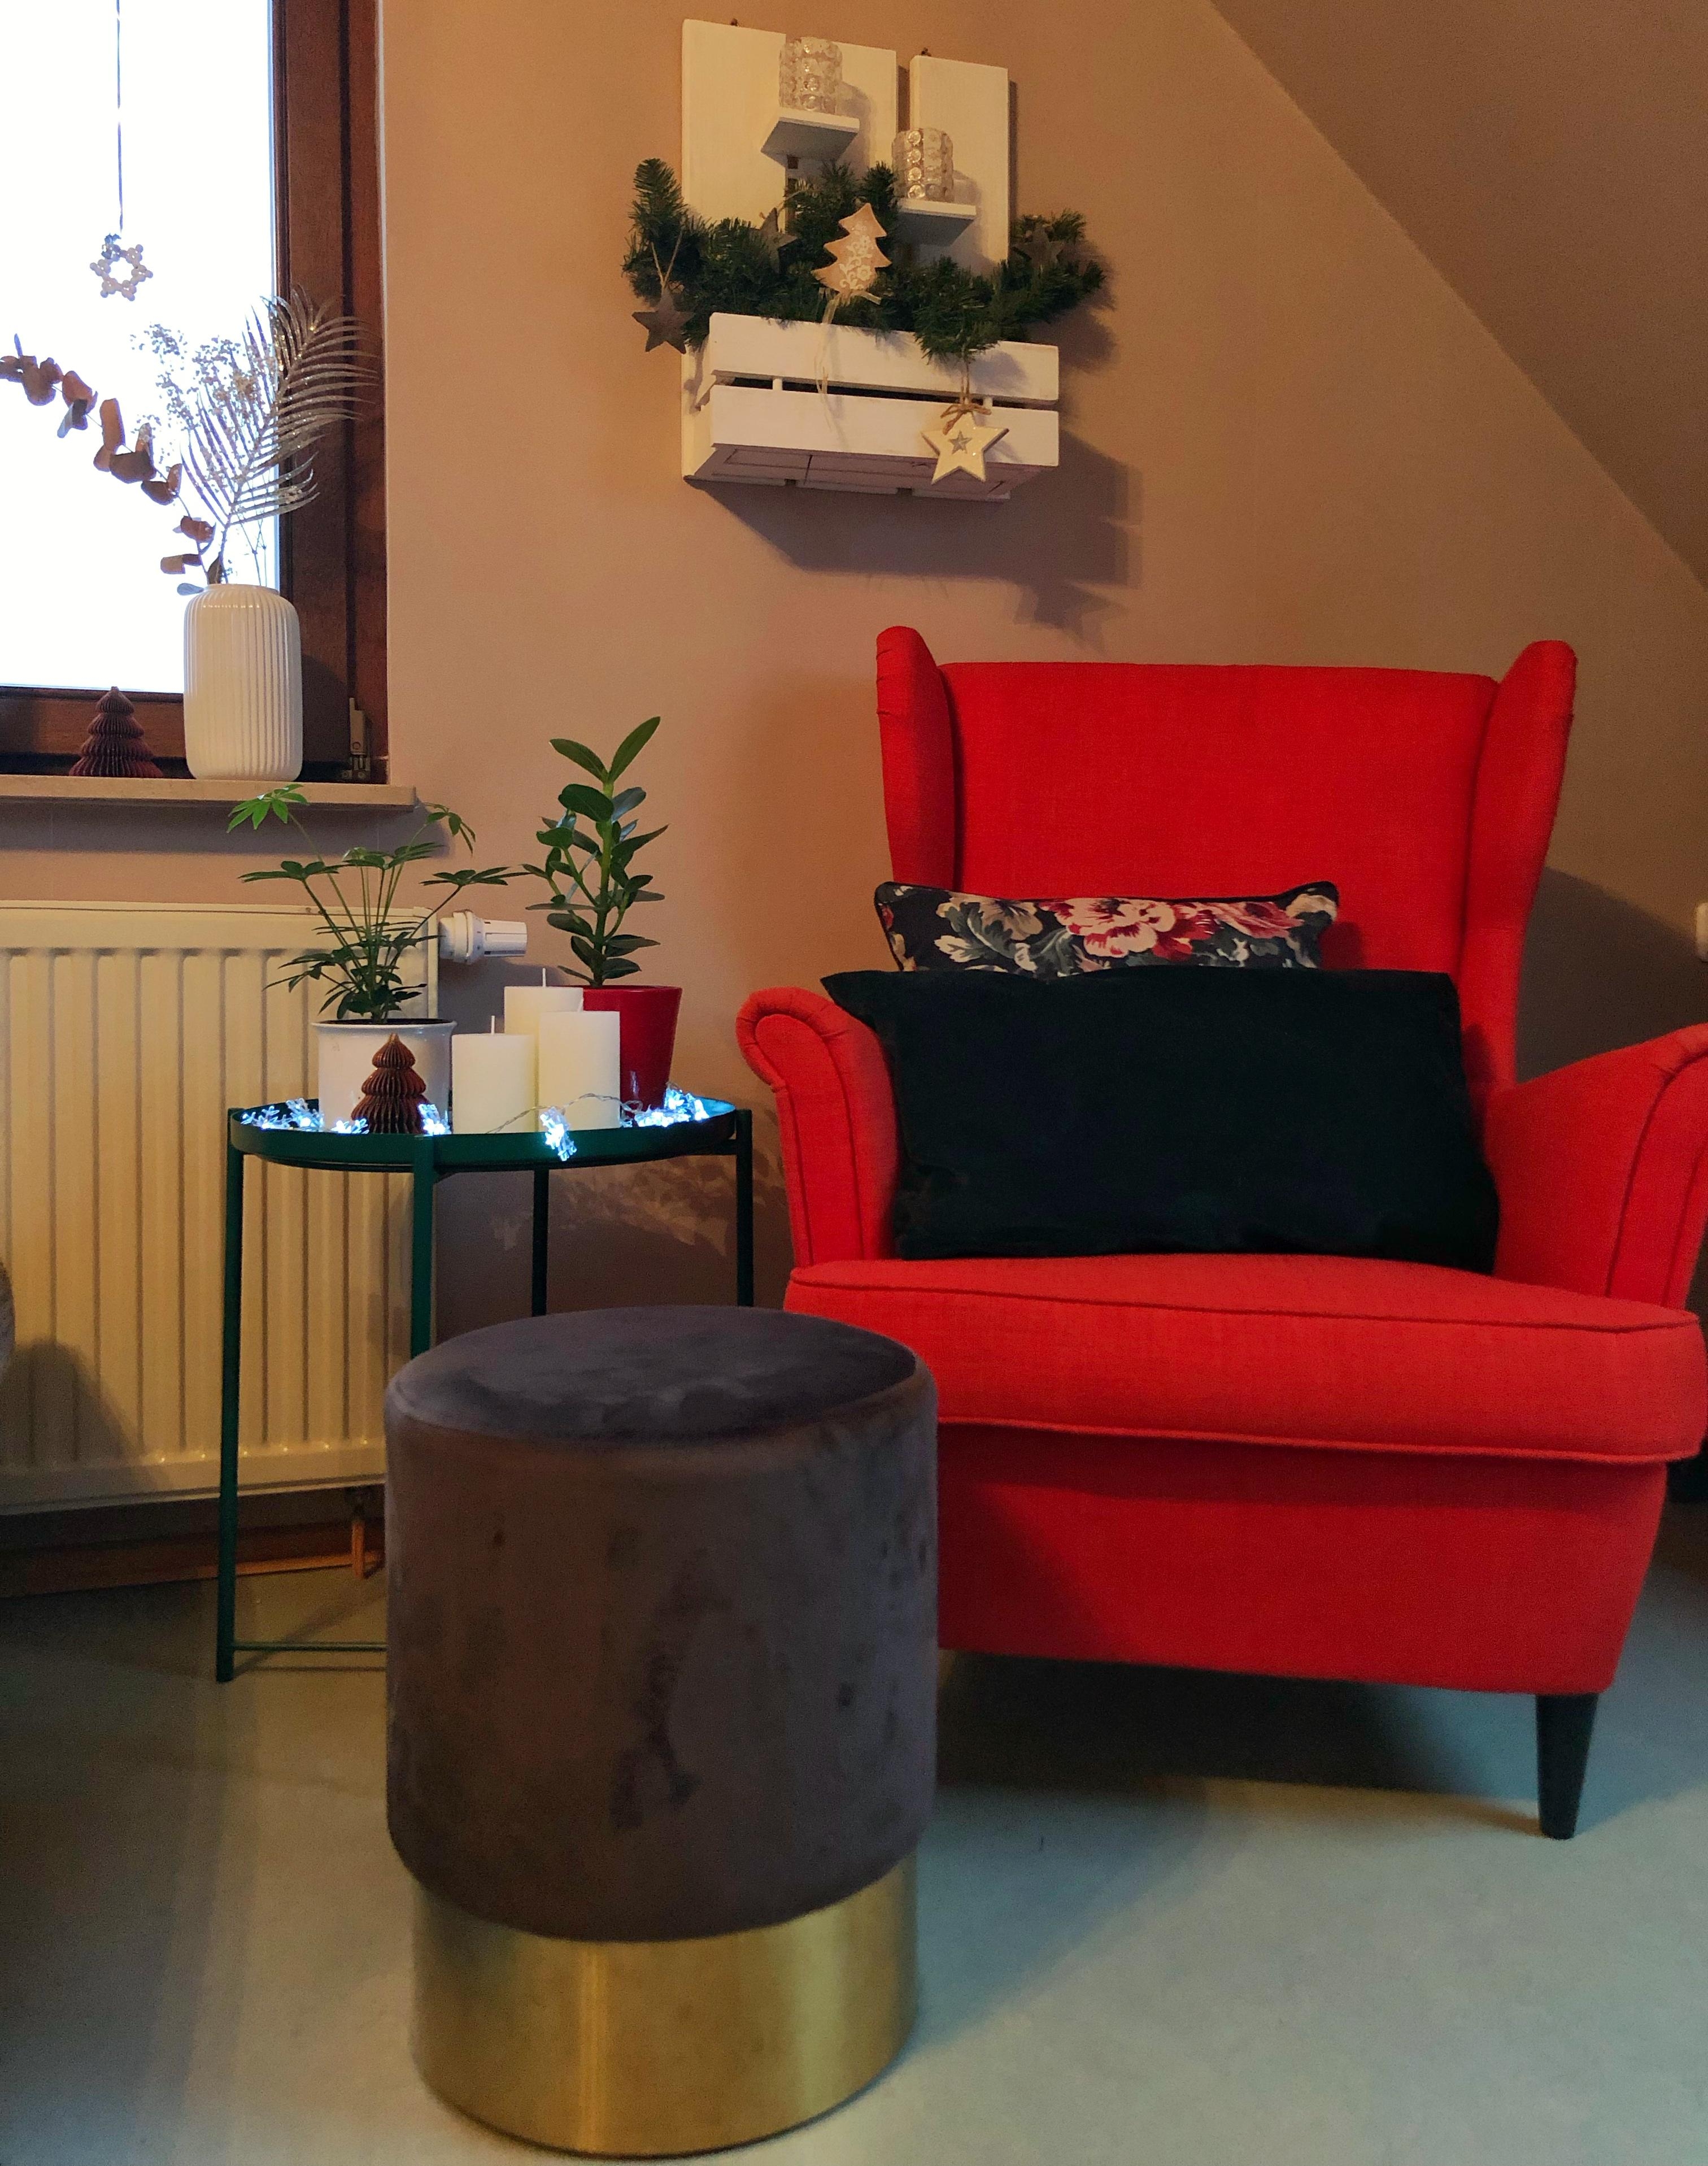 Ein gemütlicher Platz in der #Weihnachtszeit

#ohrensessel #wohnzimmer #weihnachtsdeko #couchliebt